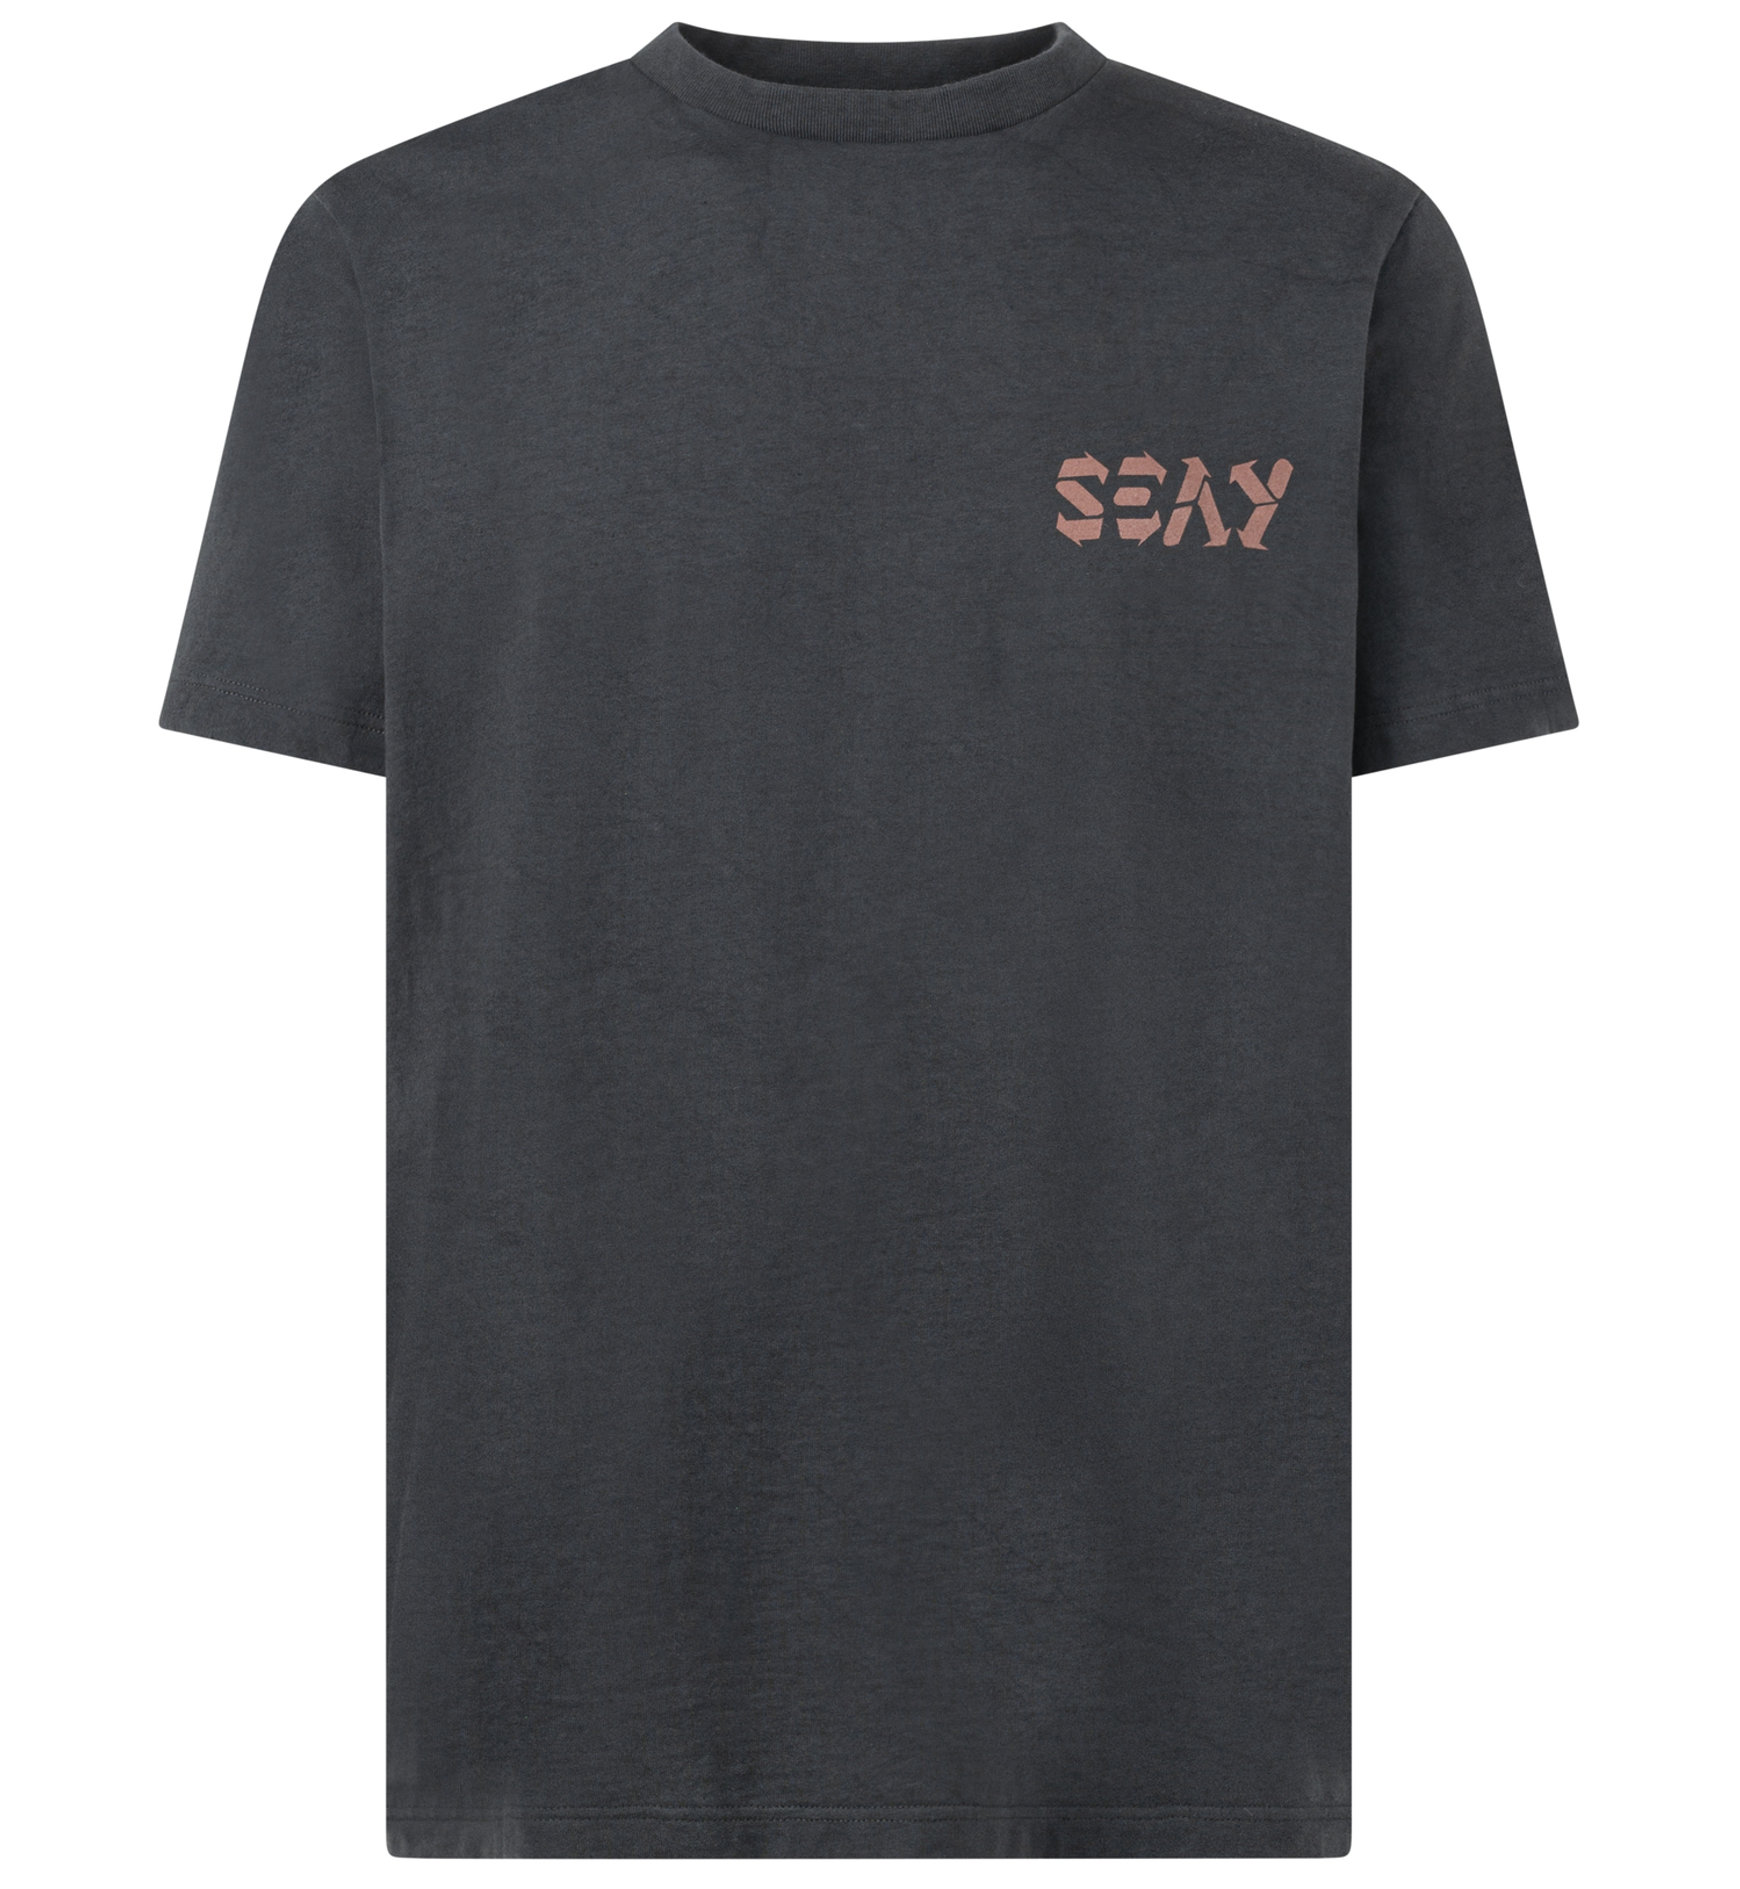 Seay Pismo T-Shirt Herren